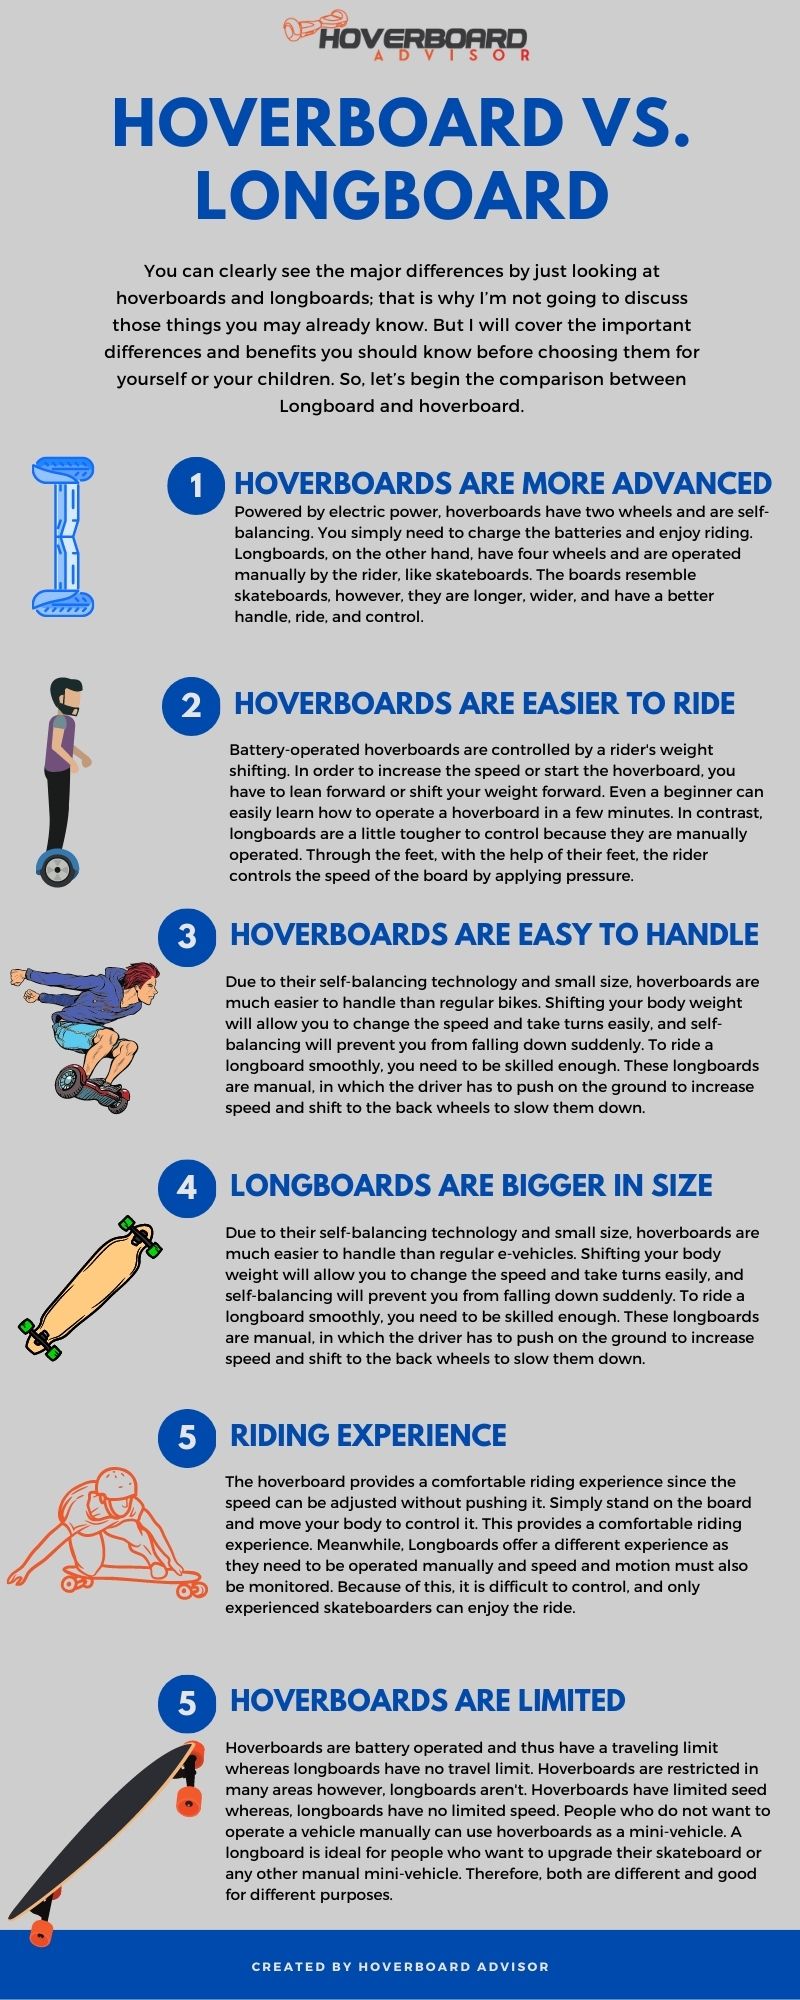 Hoverboard vs. Longboard